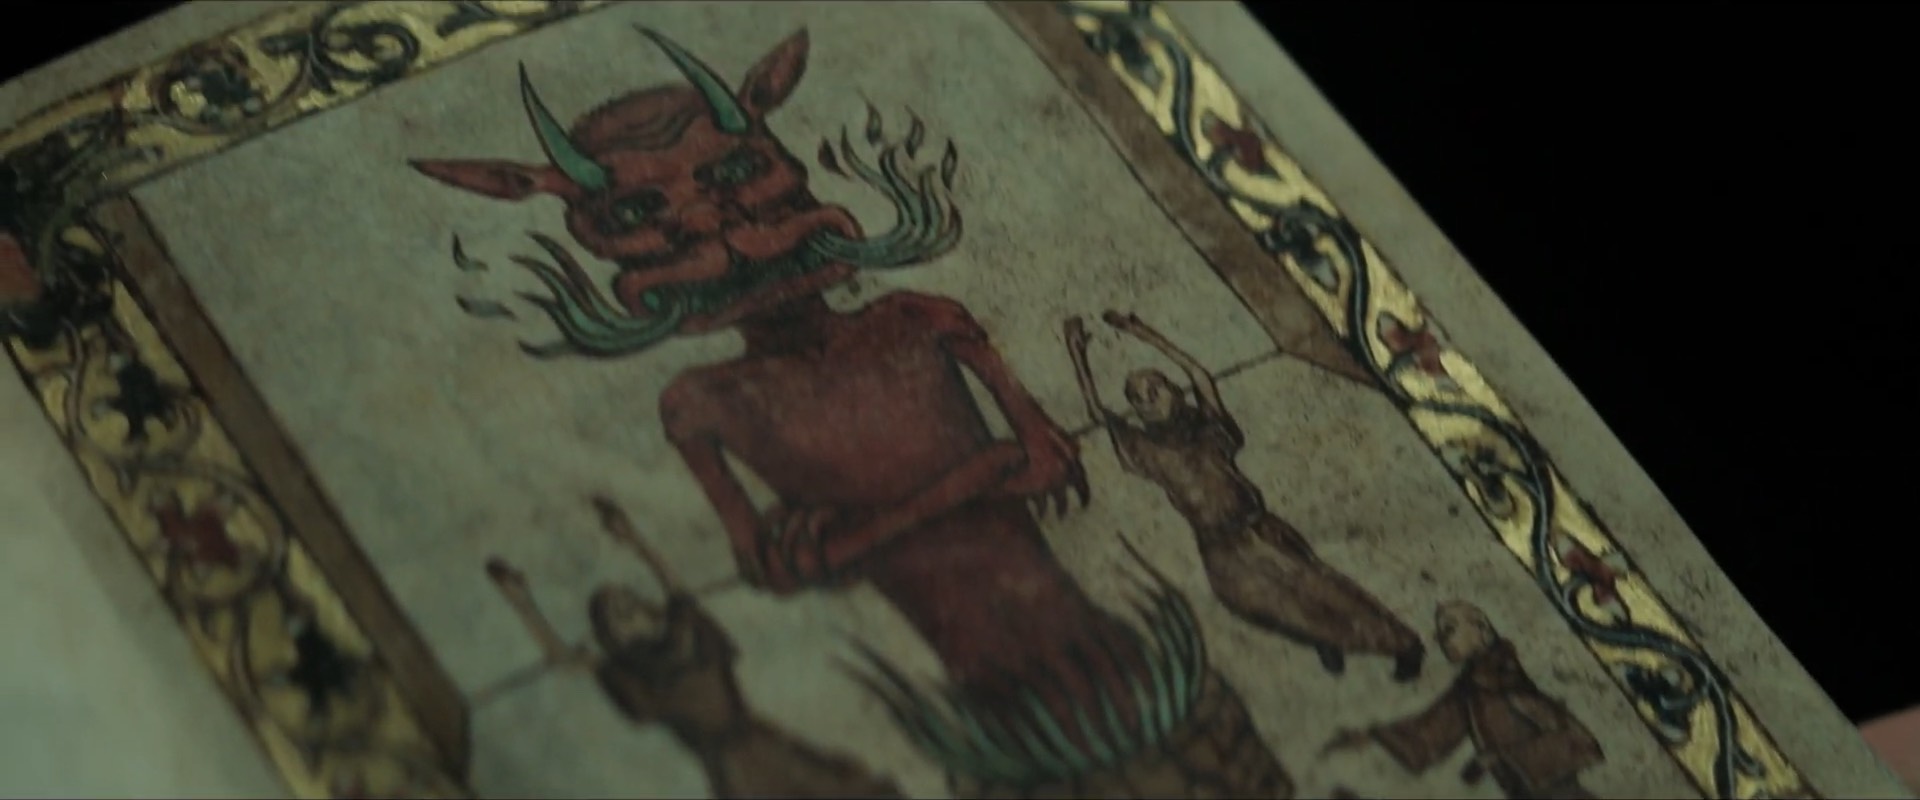 Chúa Quỷ Asmodeus: Con quỷ hùng mạnh và gian trá nhất địa ngục hiện hình trong phim kinh dị The Pope’s Exorcist! - Ảnh 4.